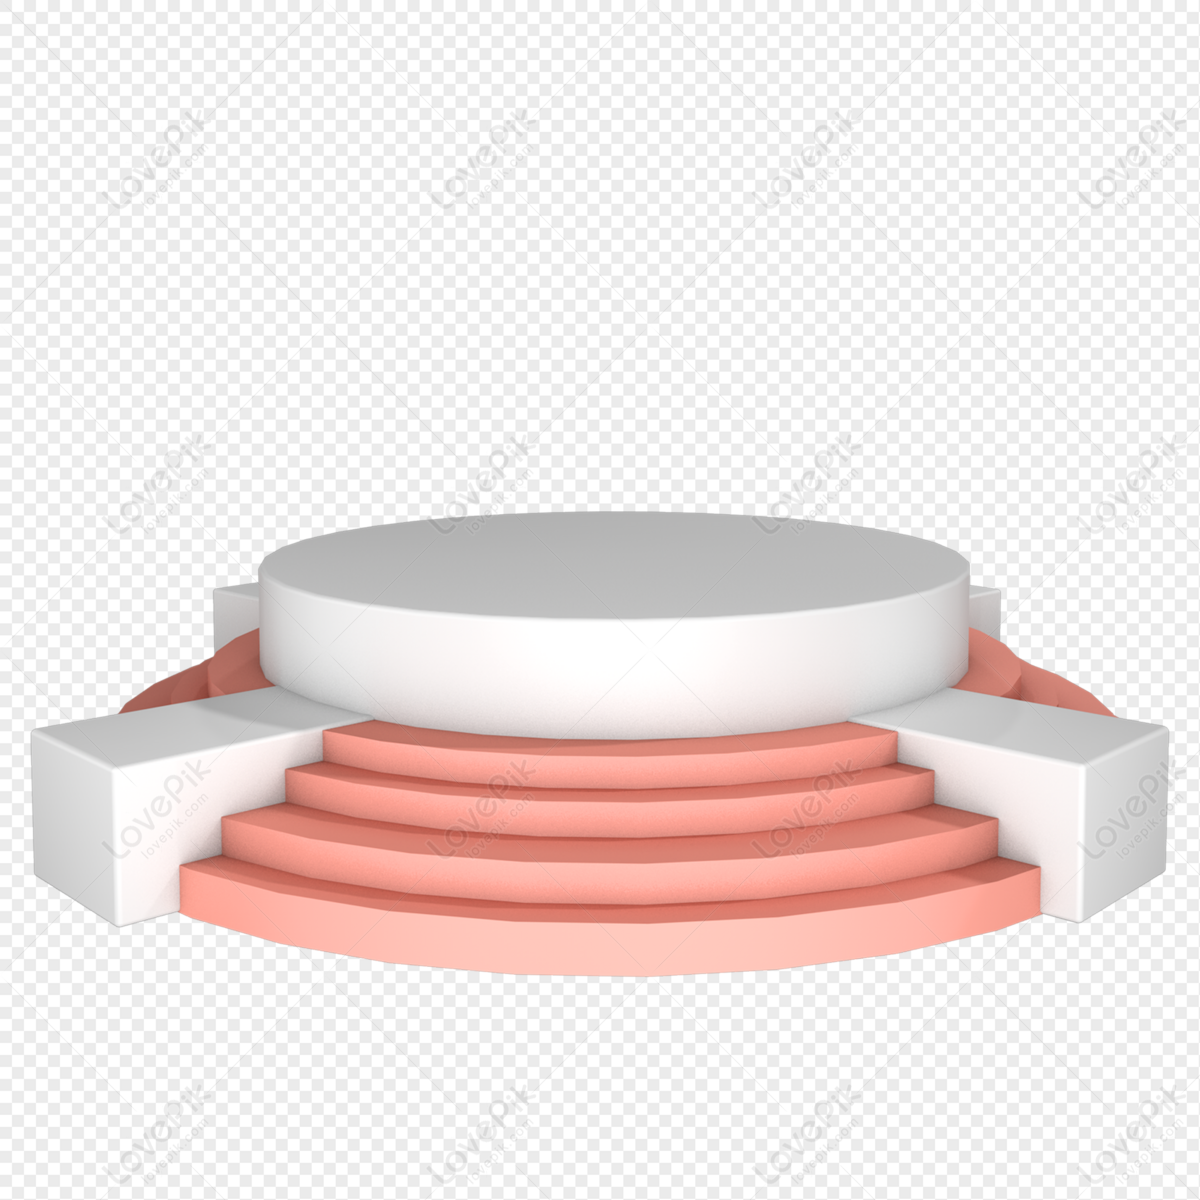 ピンクホワイトステップステージ イラスト， 円形プラットフォーム, ステージホワイト, ステージプラットフォーム フリー素材 透過 - Lovepik